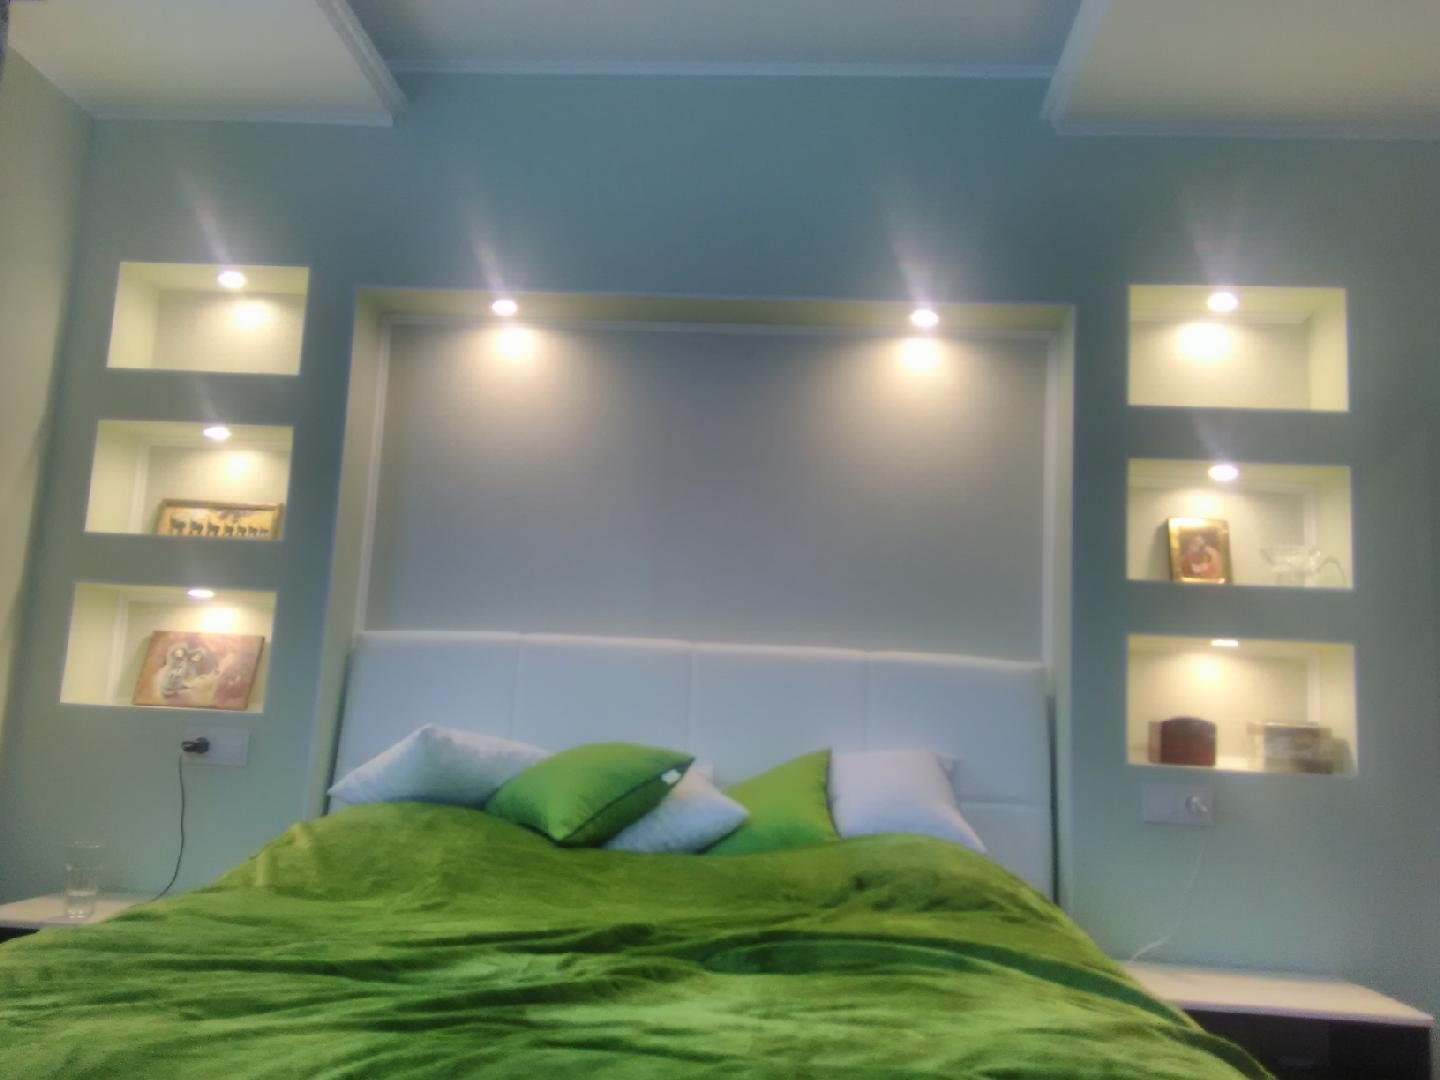 Перегородка в спальне: 125 фото идей зонирования, красивый дизайн спальни с перегородкой